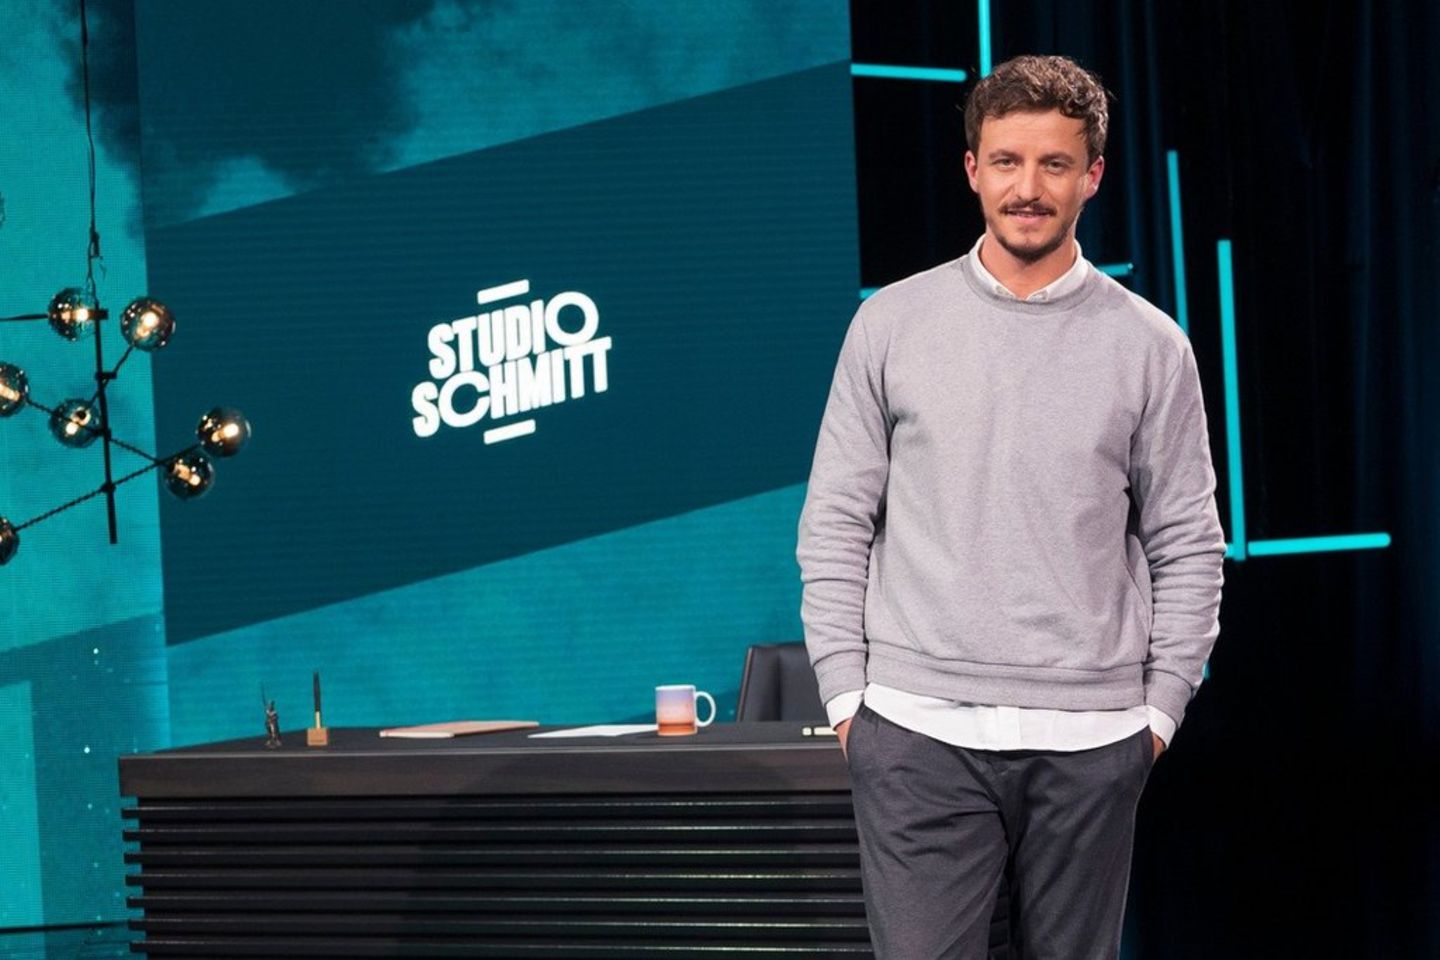 Tommi Schmitt verabschiedet sich von seiner ZDFneo-Show "Studio Schmitt".